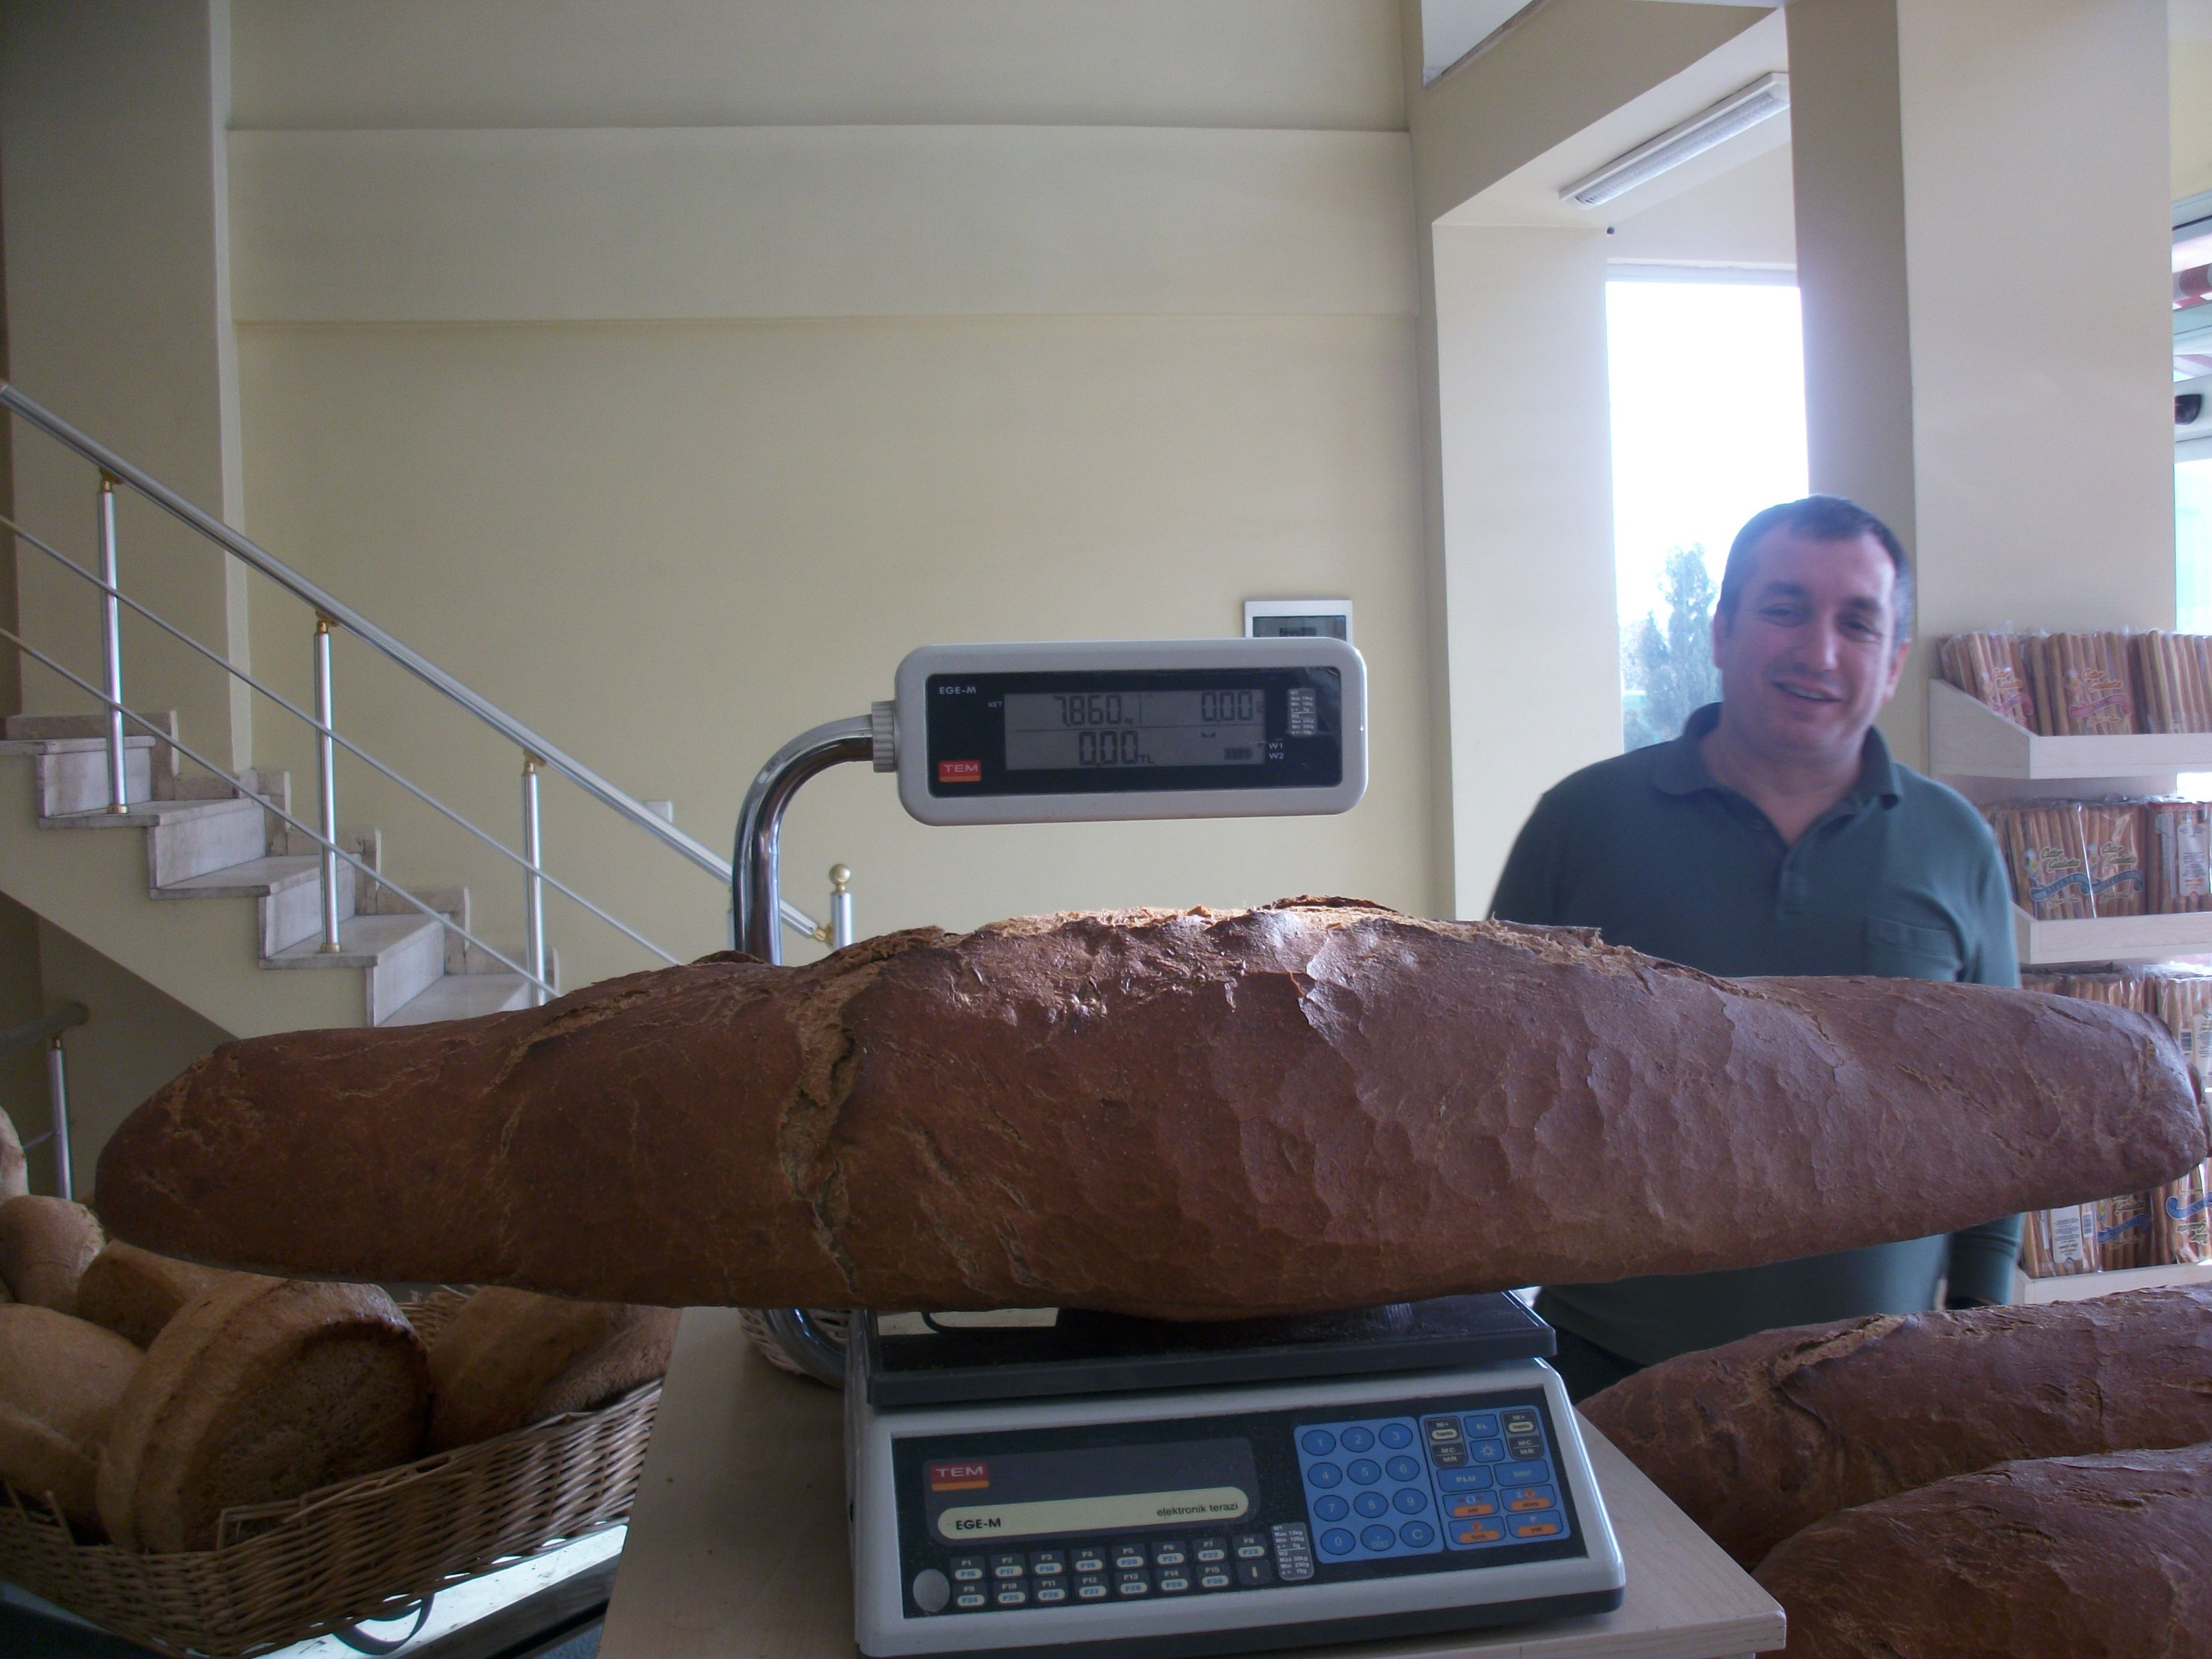 Balina ekmek üretti kilo ile satıyor